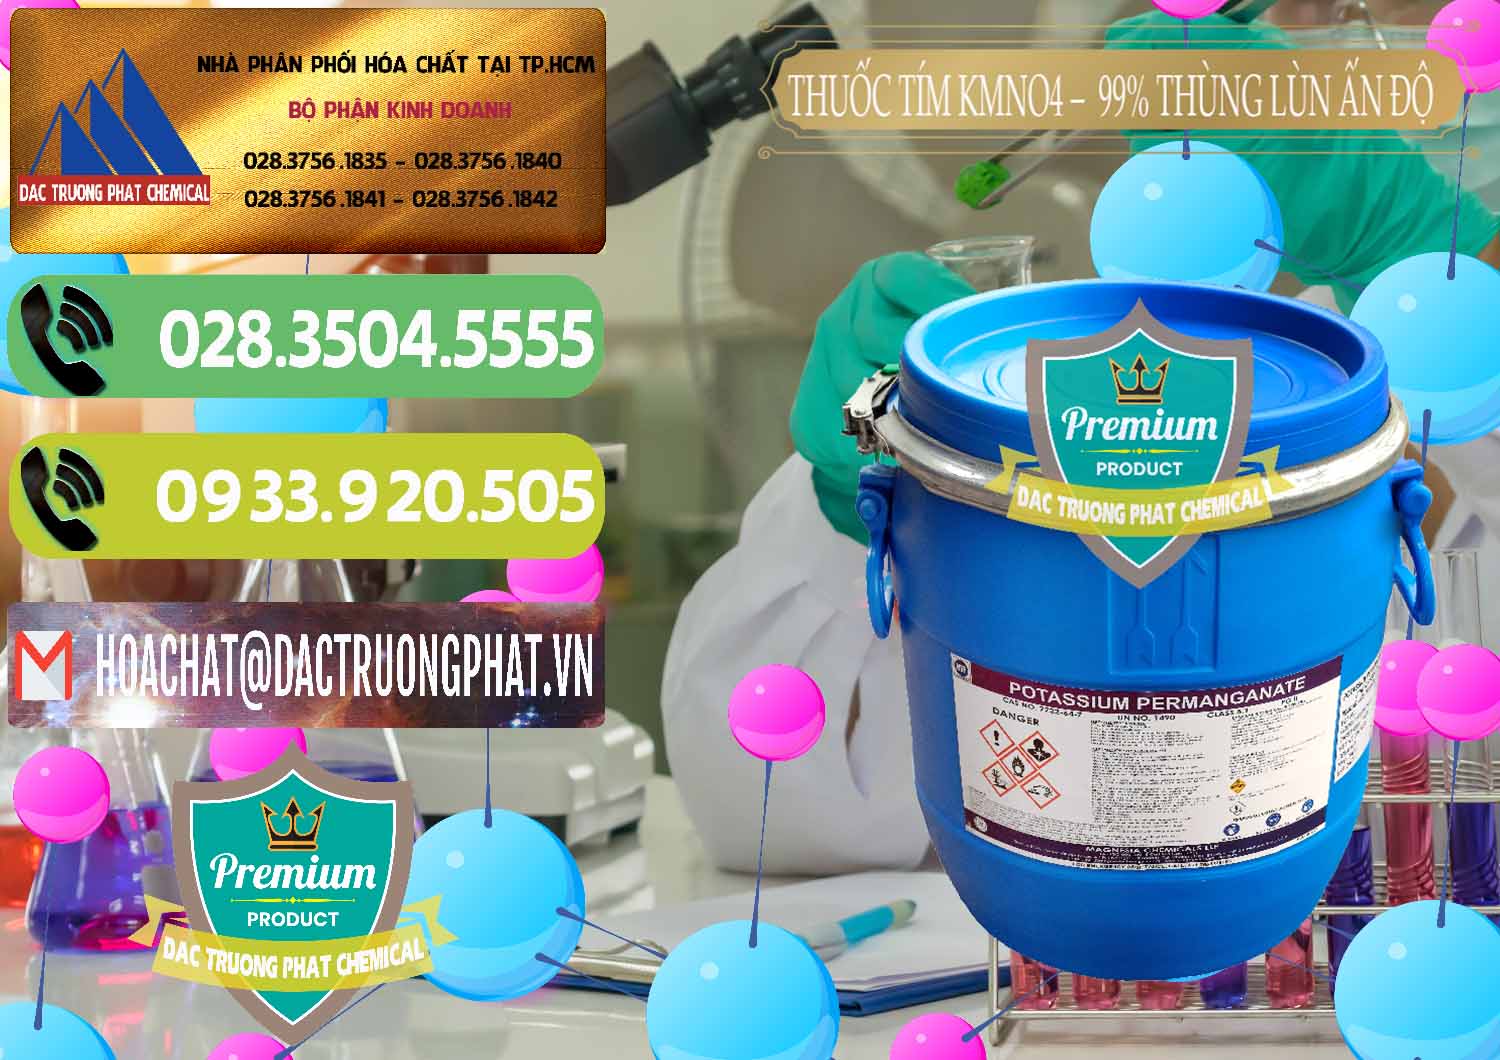 Nơi bán & cung cấp Thuốc Tím - KMNO4 Thùng Lùn 99% Magnesia Chemicals Ấn Độ India - 0165 - Công ty bán _ cung cấp hóa chất tại TP.HCM - hoachatmientay.vn